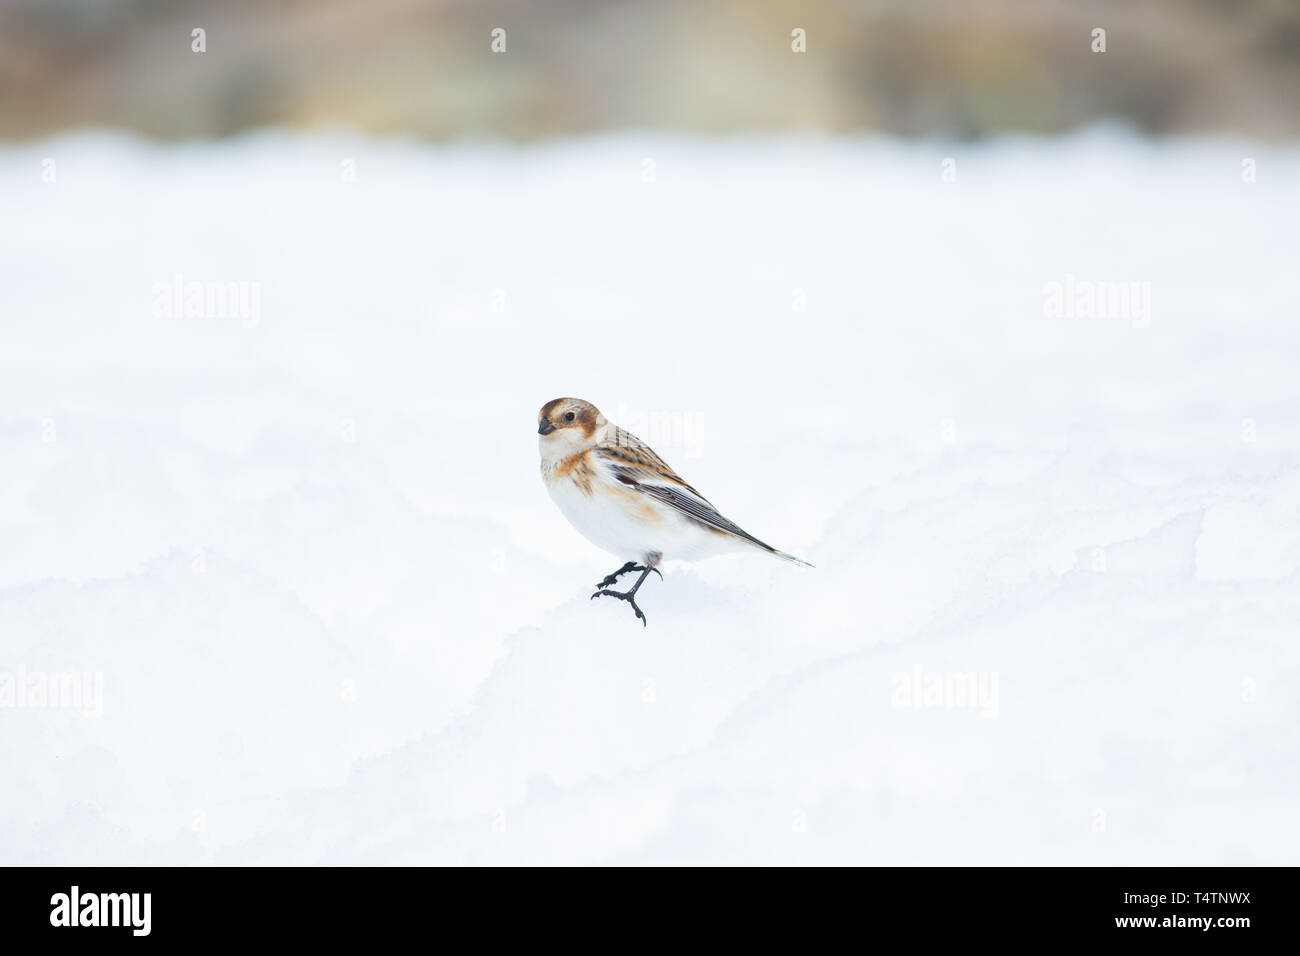 Snow Bunting en el Ben Nevis, un pájaro del Ártico se encuentran en las cumbres de las montañas de Escocia Foto de stock